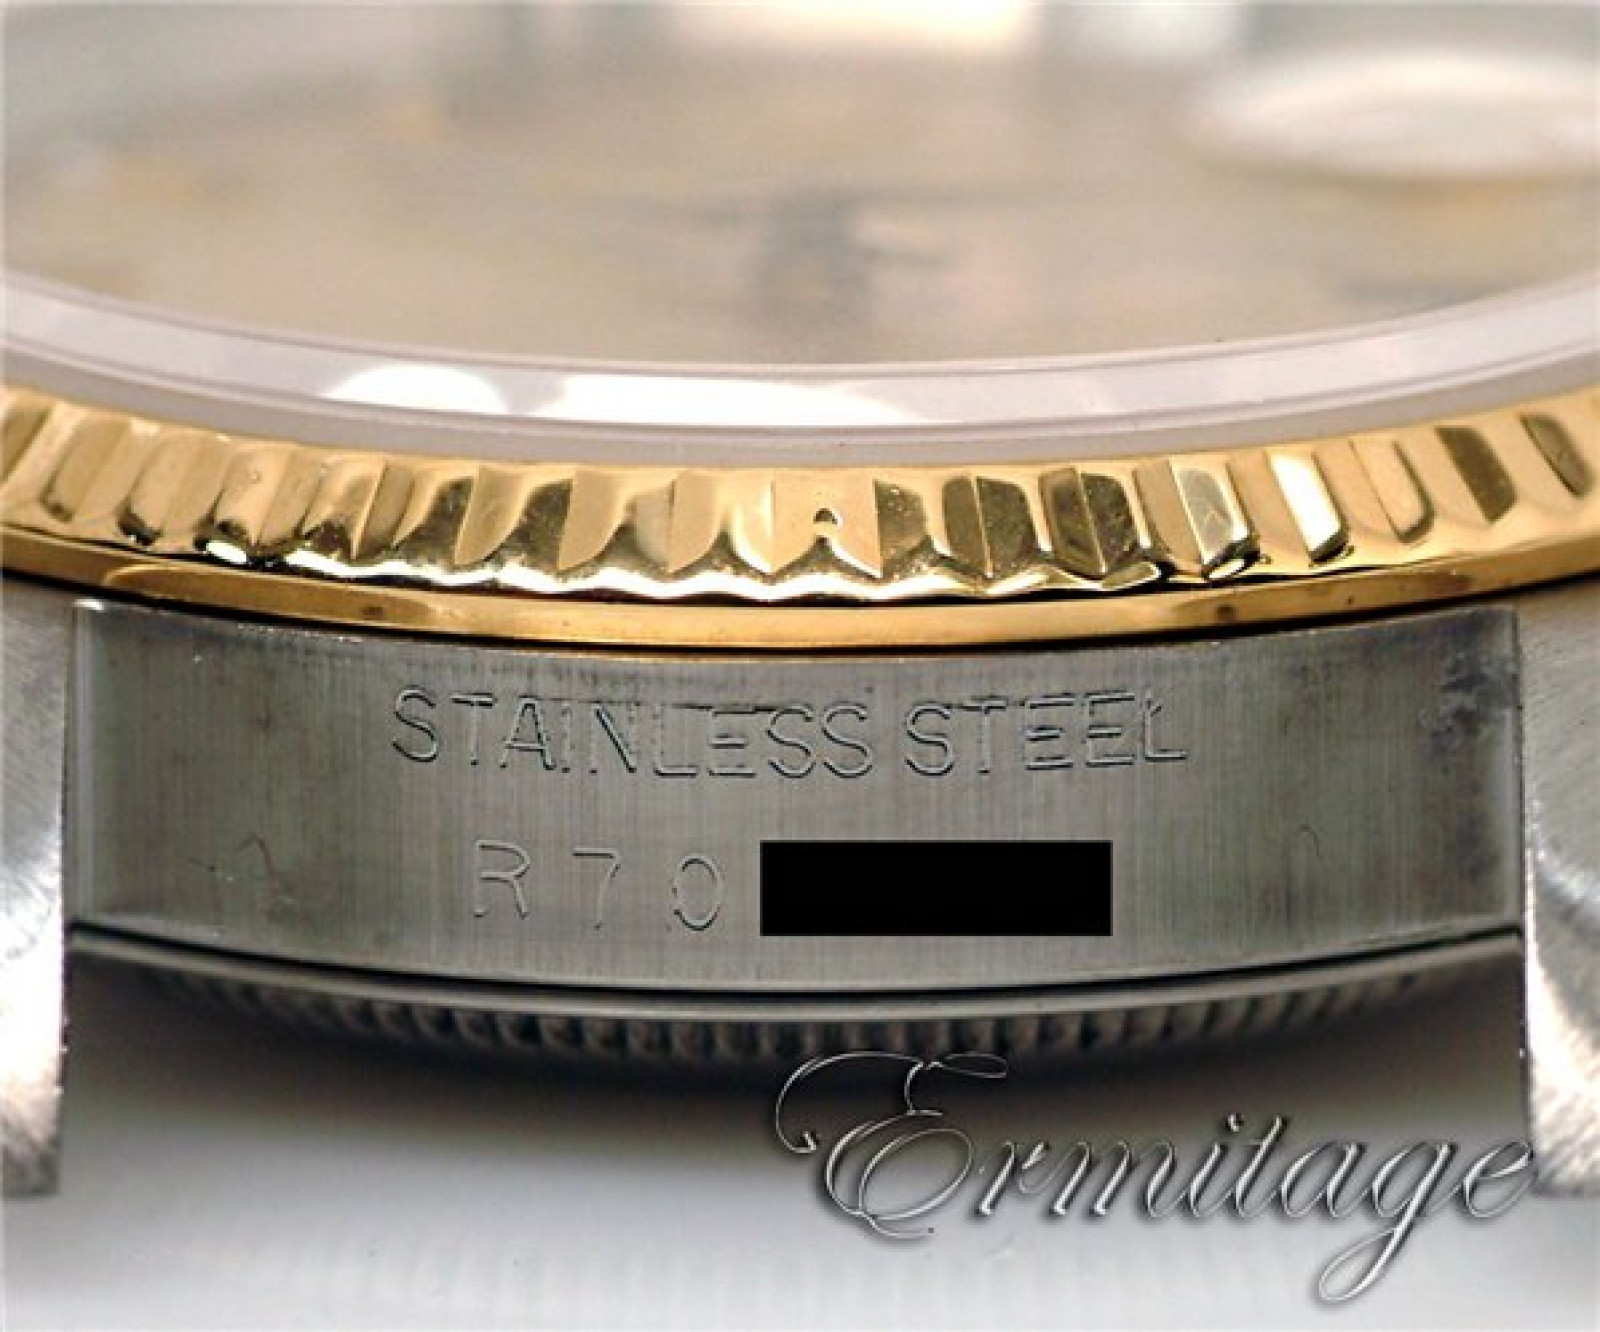 Rolex Datejust 16233 Gold & Steel 1987